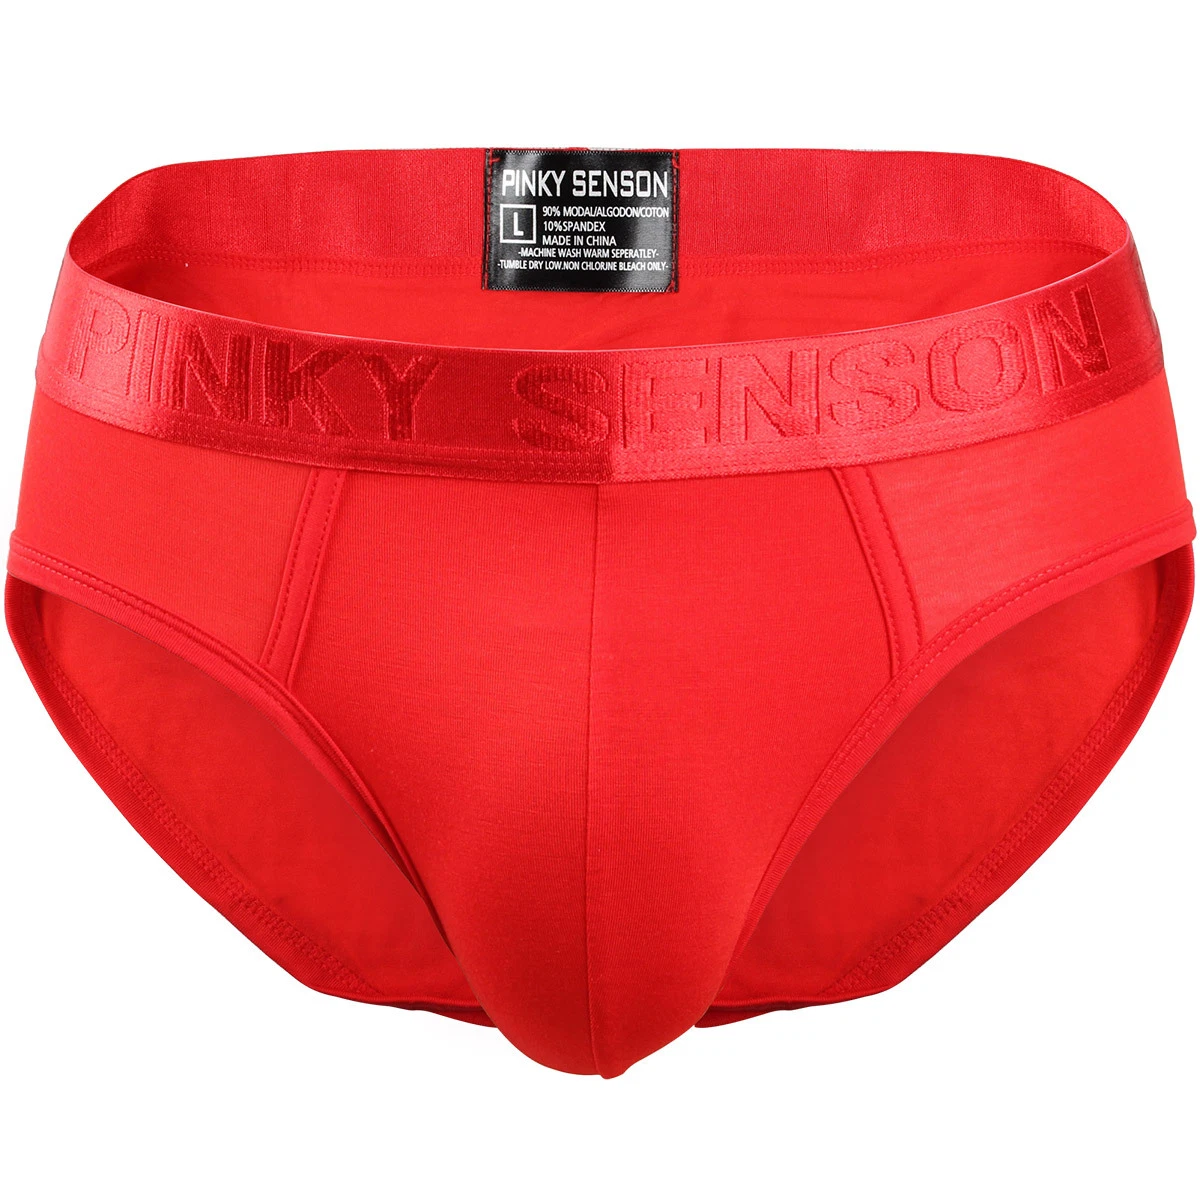 Logotipo personalizado tejido confortable Mens Boxer Brief Underwear al mejor precio